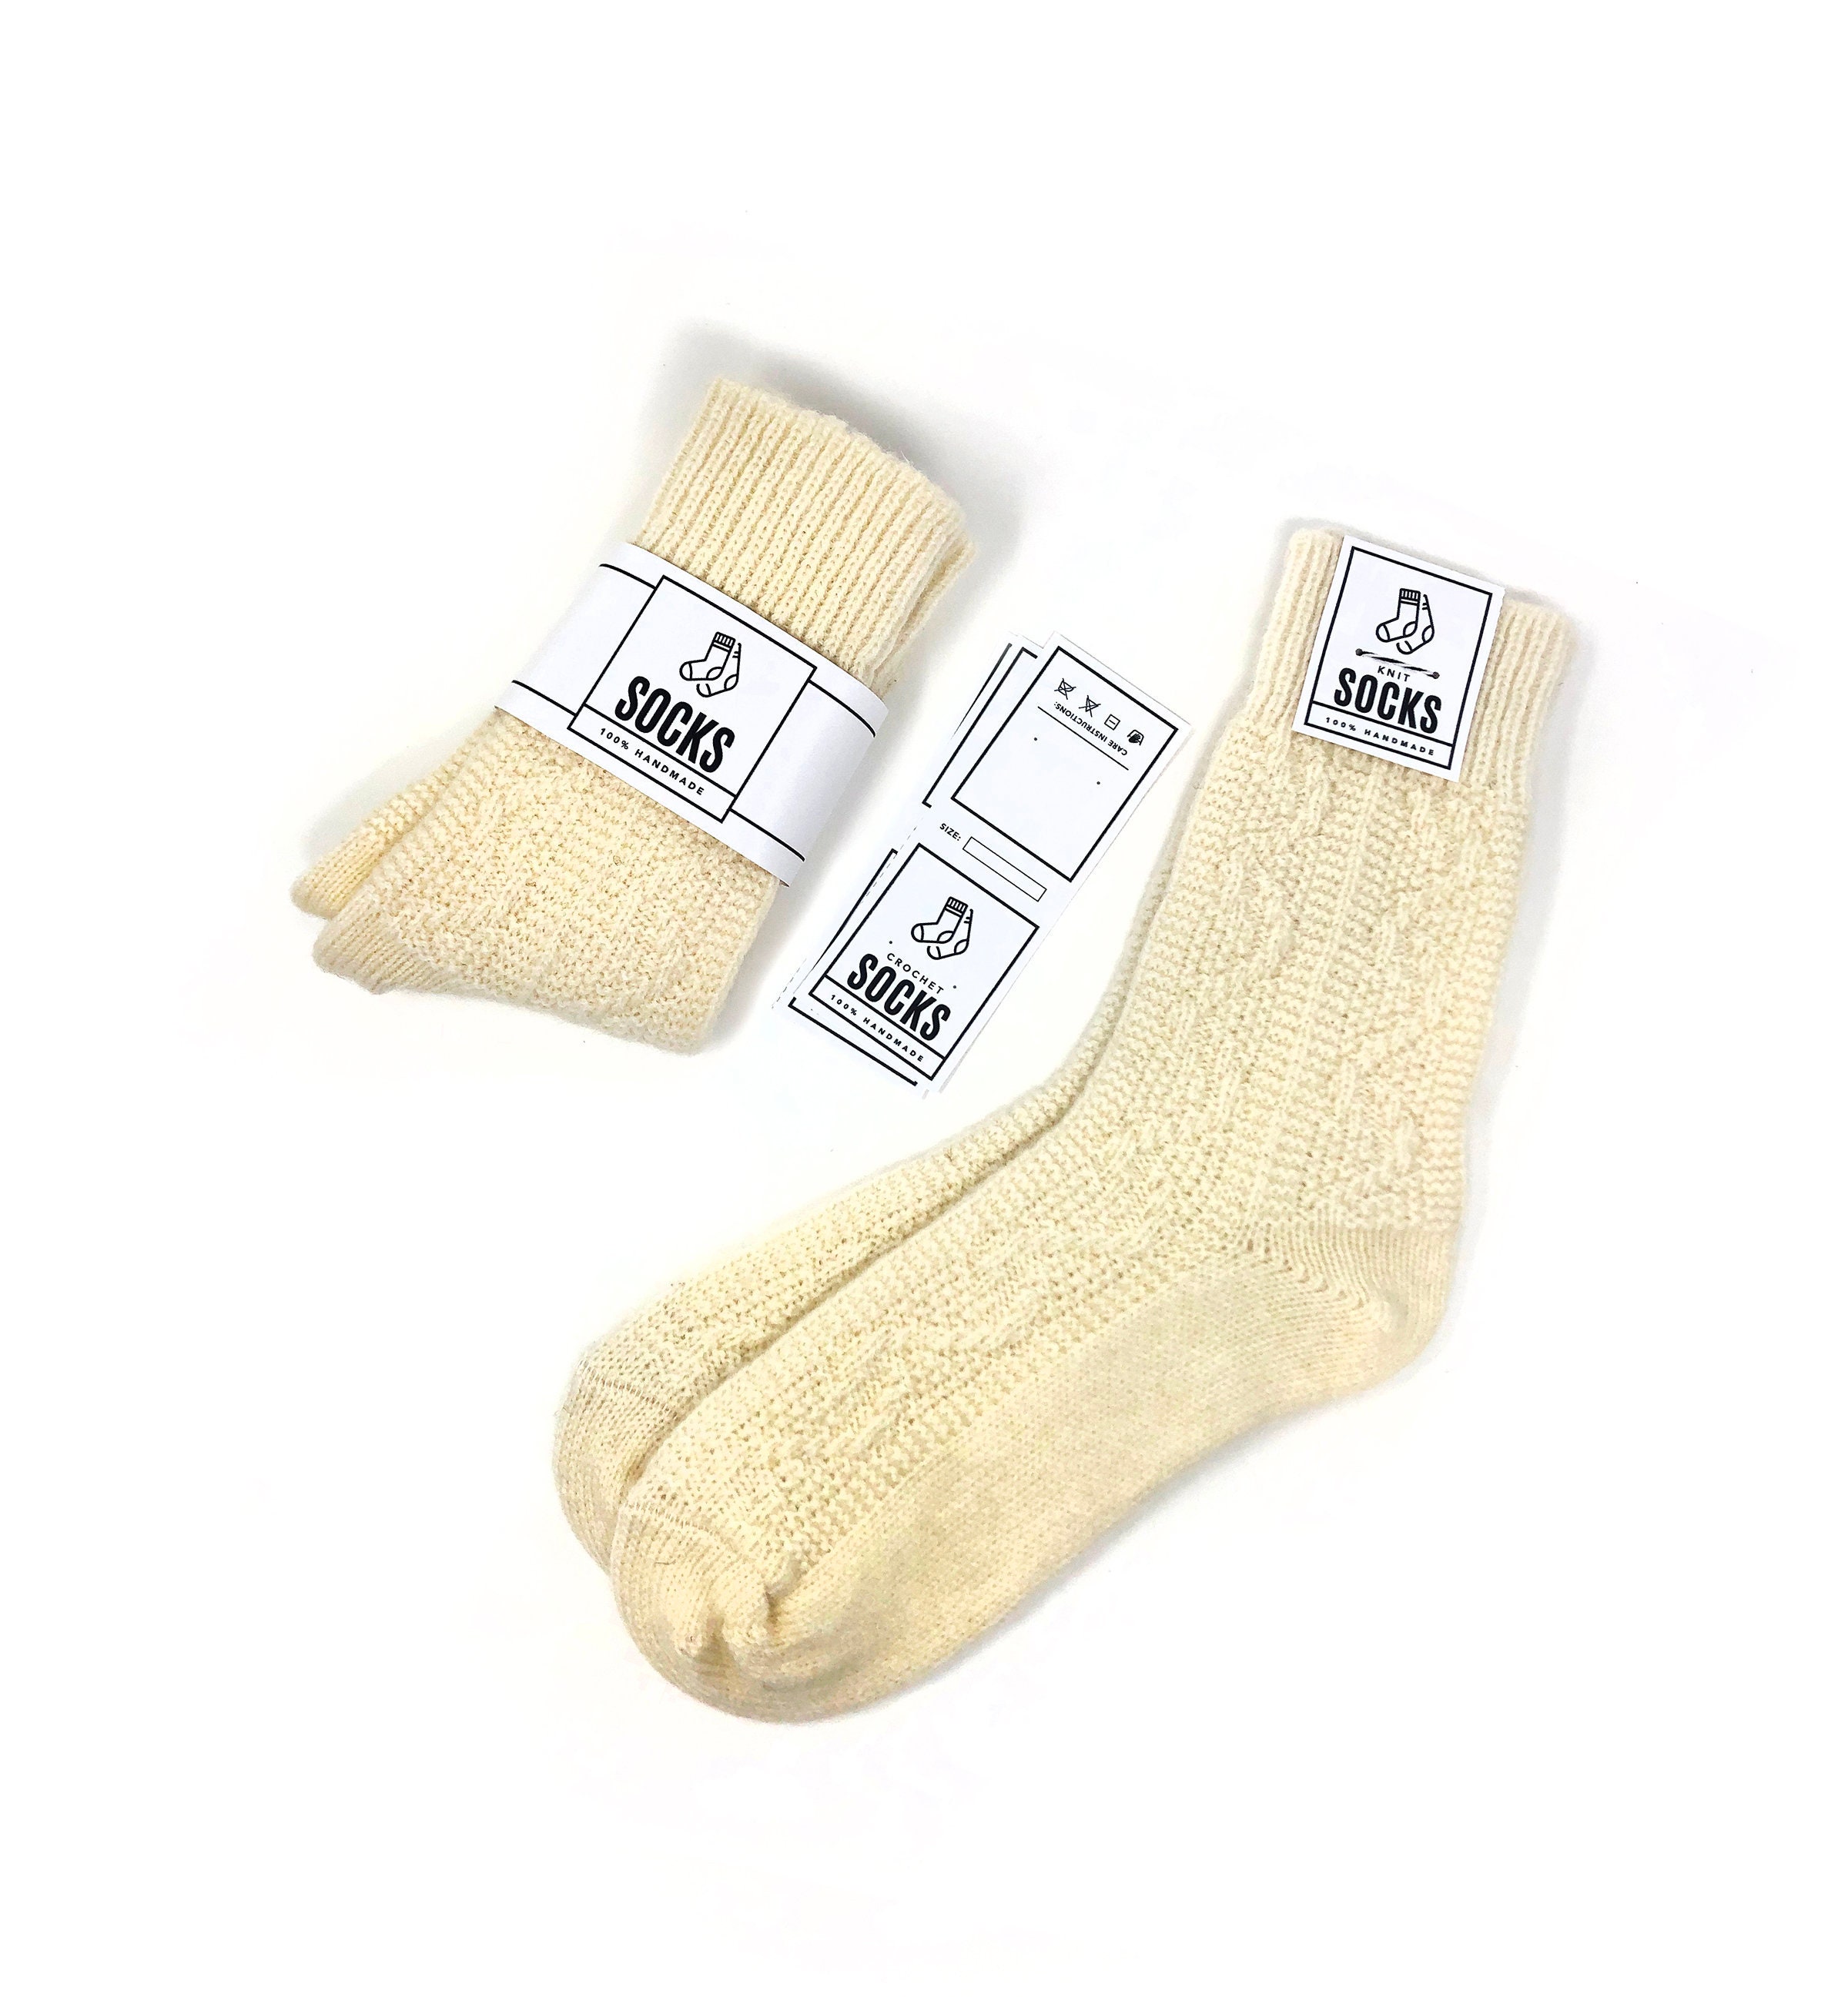 Free Printable Christmas Sock Tags